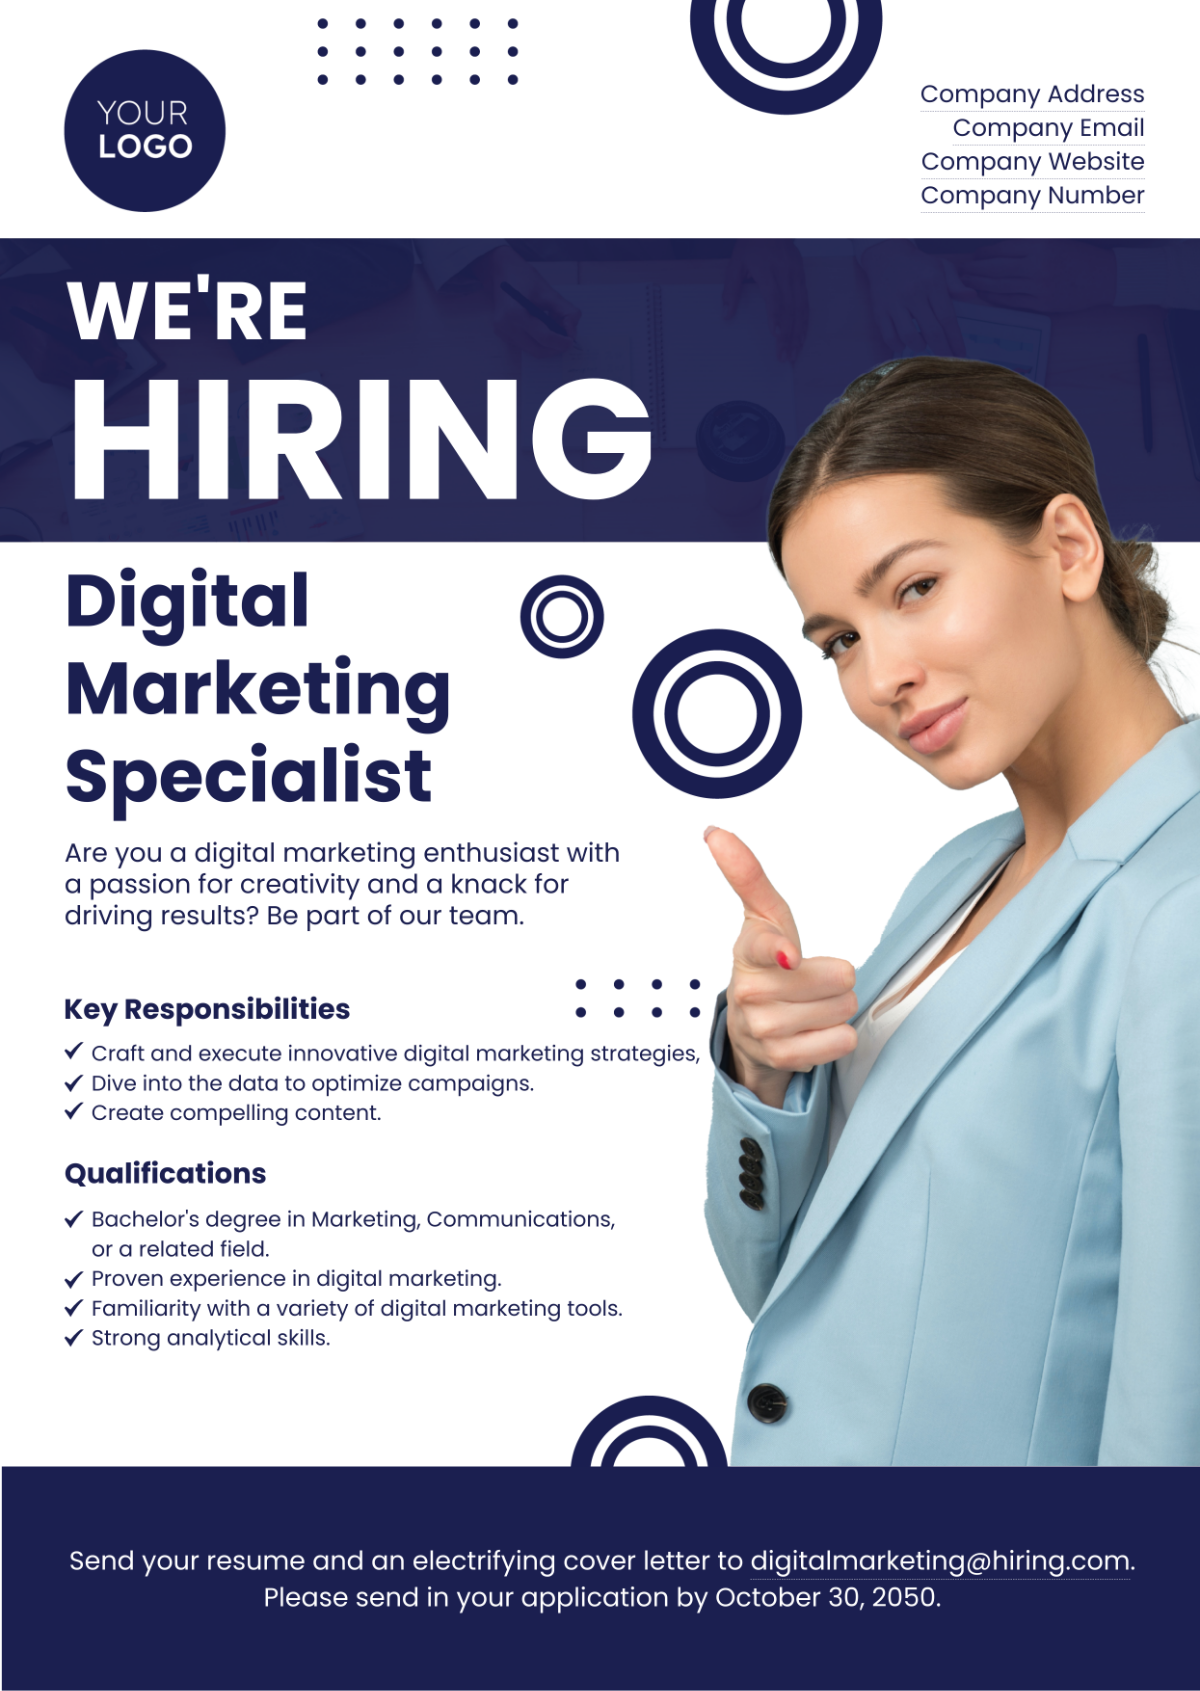 Digital Marketing Specialist Job Ad Template